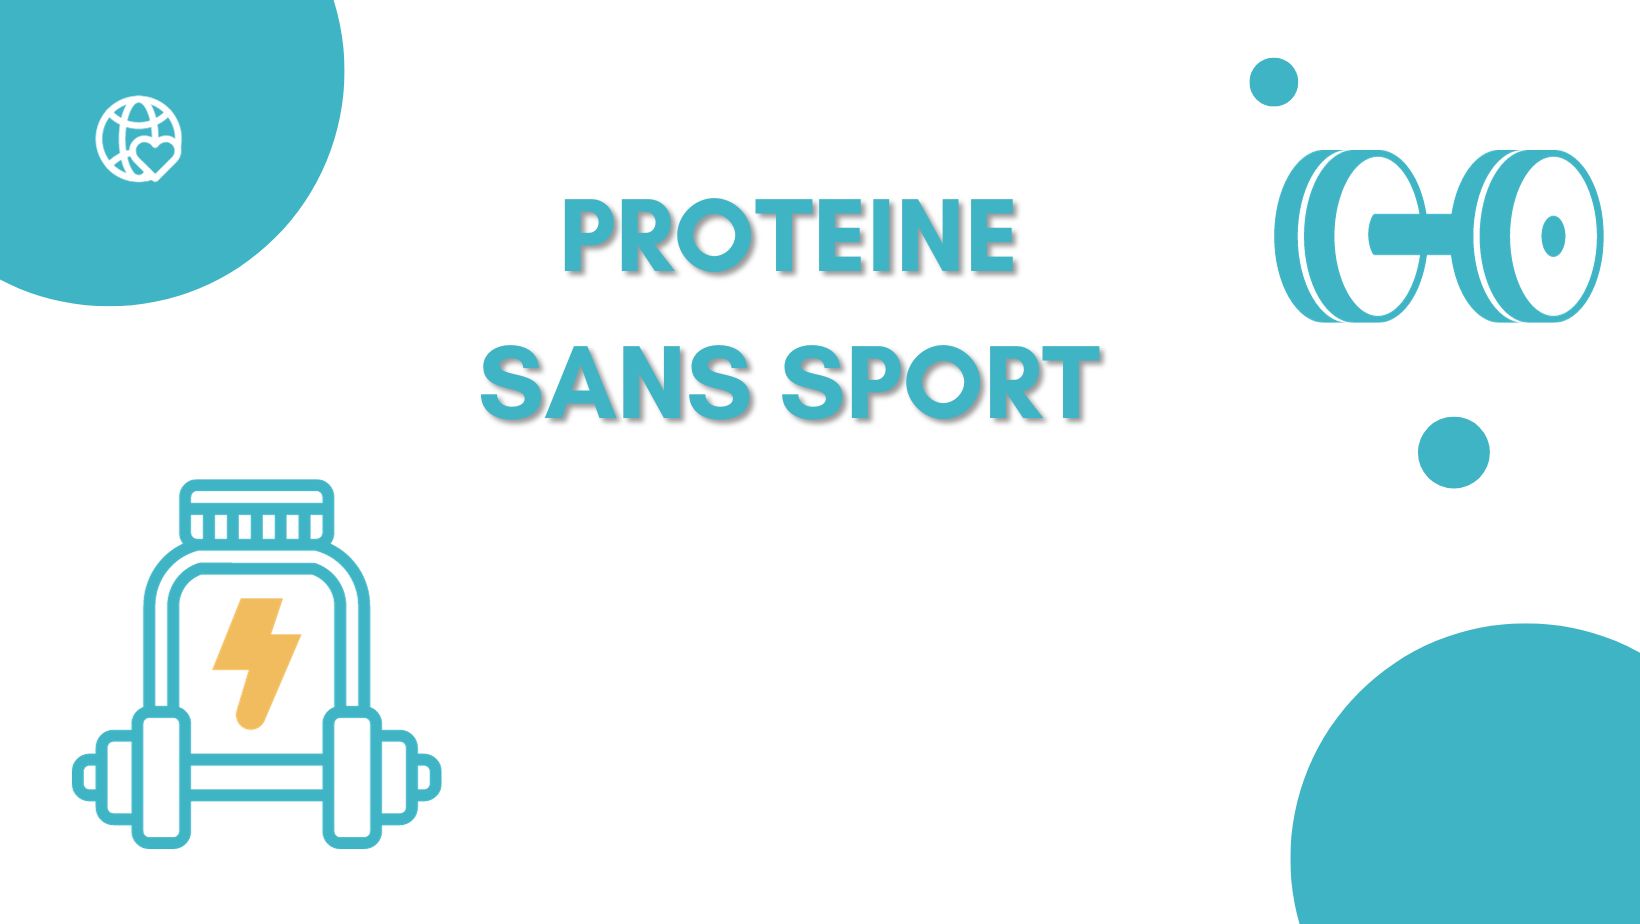 Prendre des Protéines sans faire de sport : Risques, avantages et recommandations